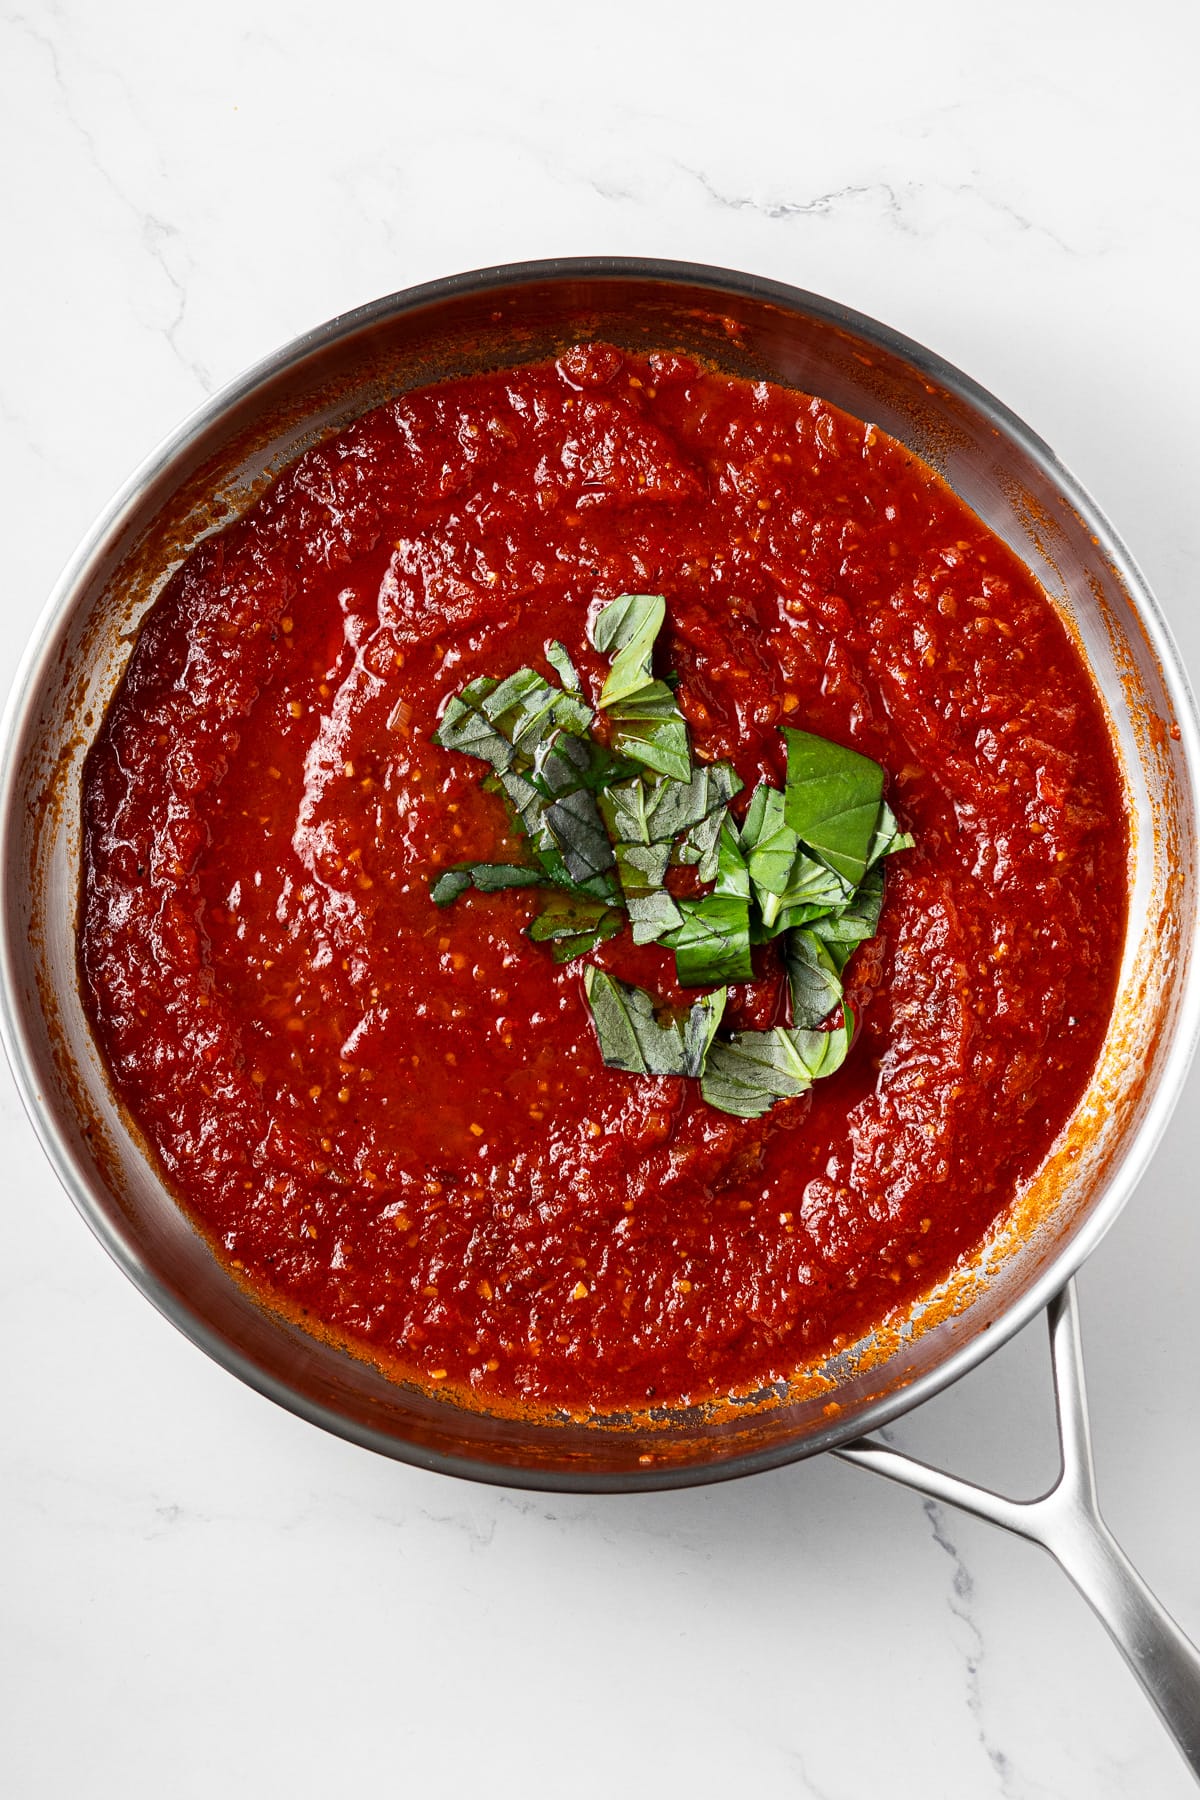 arrabbiata tomato sauce and fresh basil in a pan